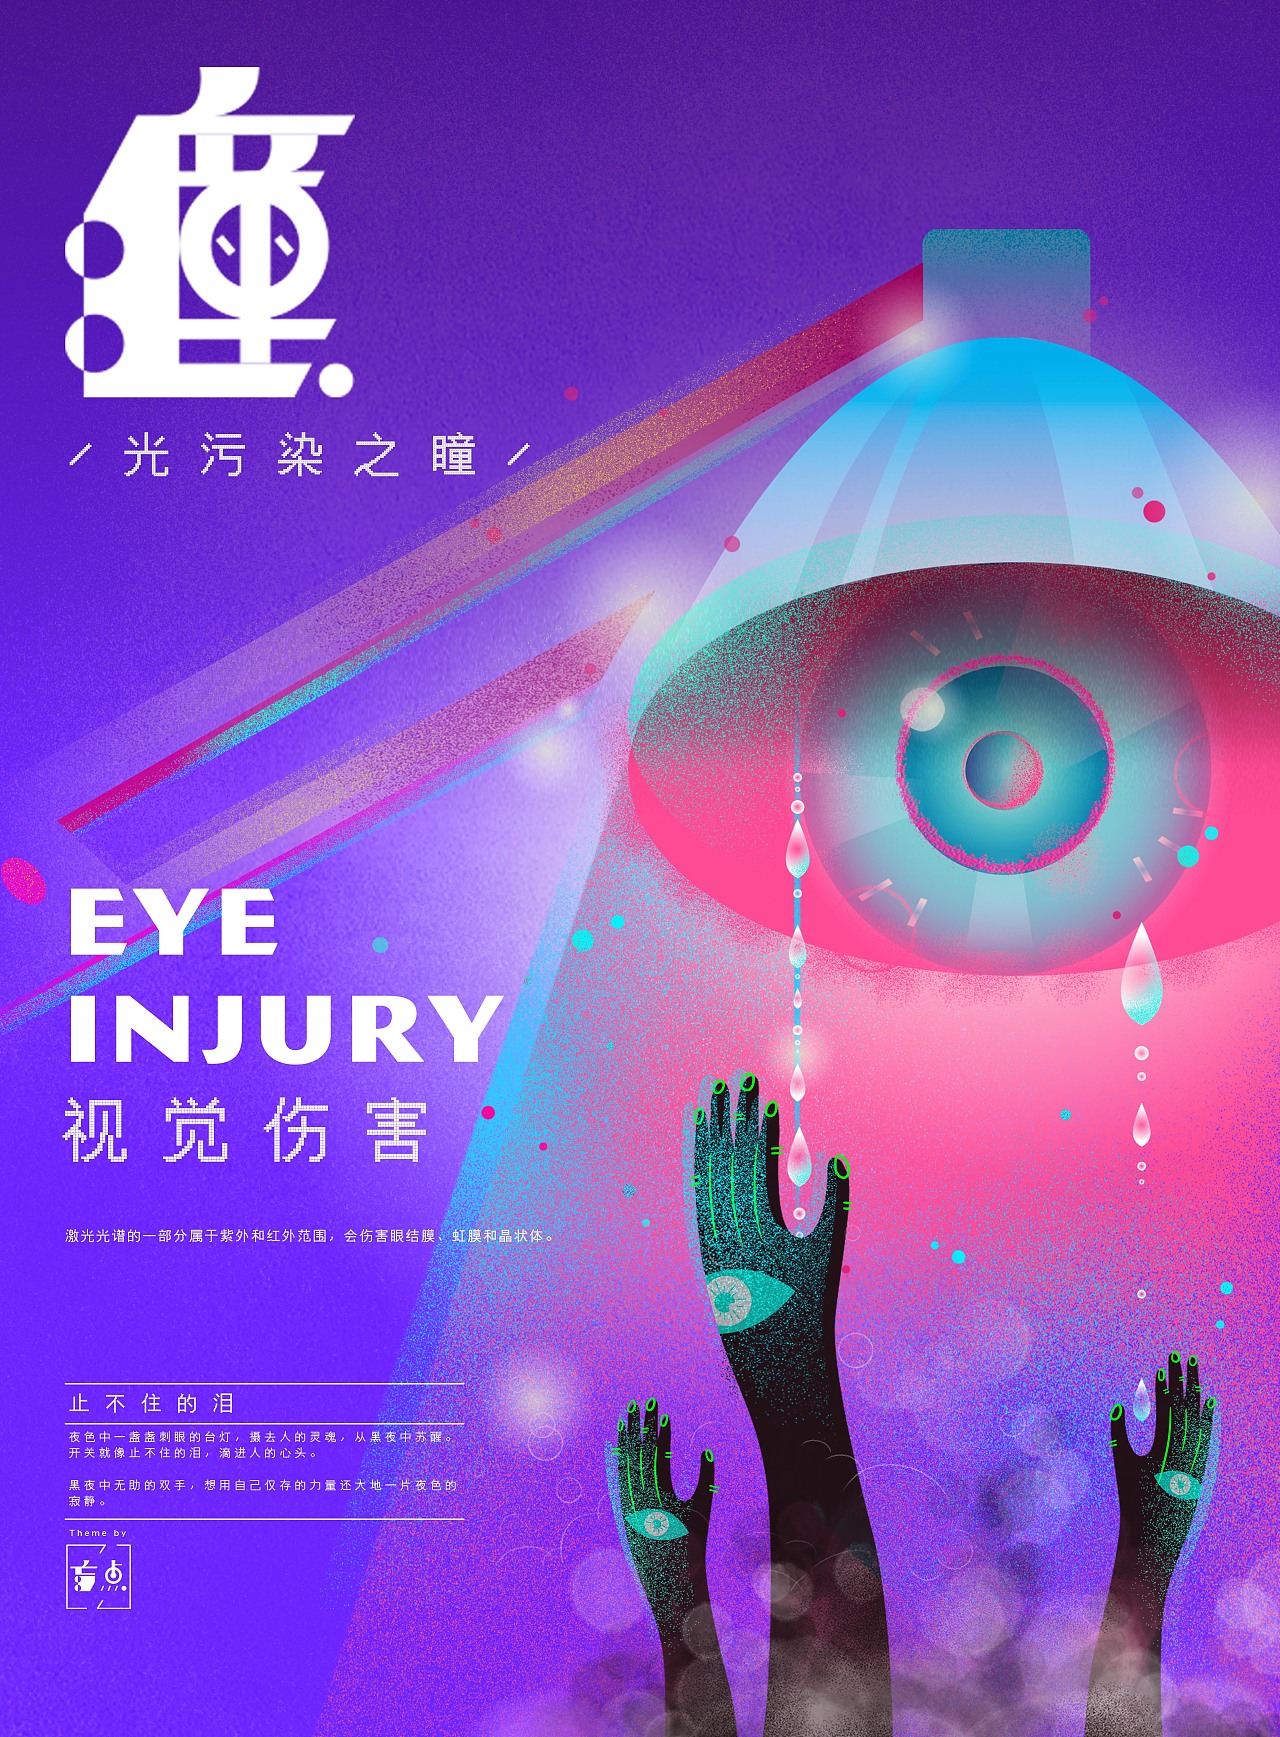 儿童眼外伤频发，眼科专家提醒：警惕生活中的伤眼利器 - 今日关注 - 湖南在线 - 华声在线